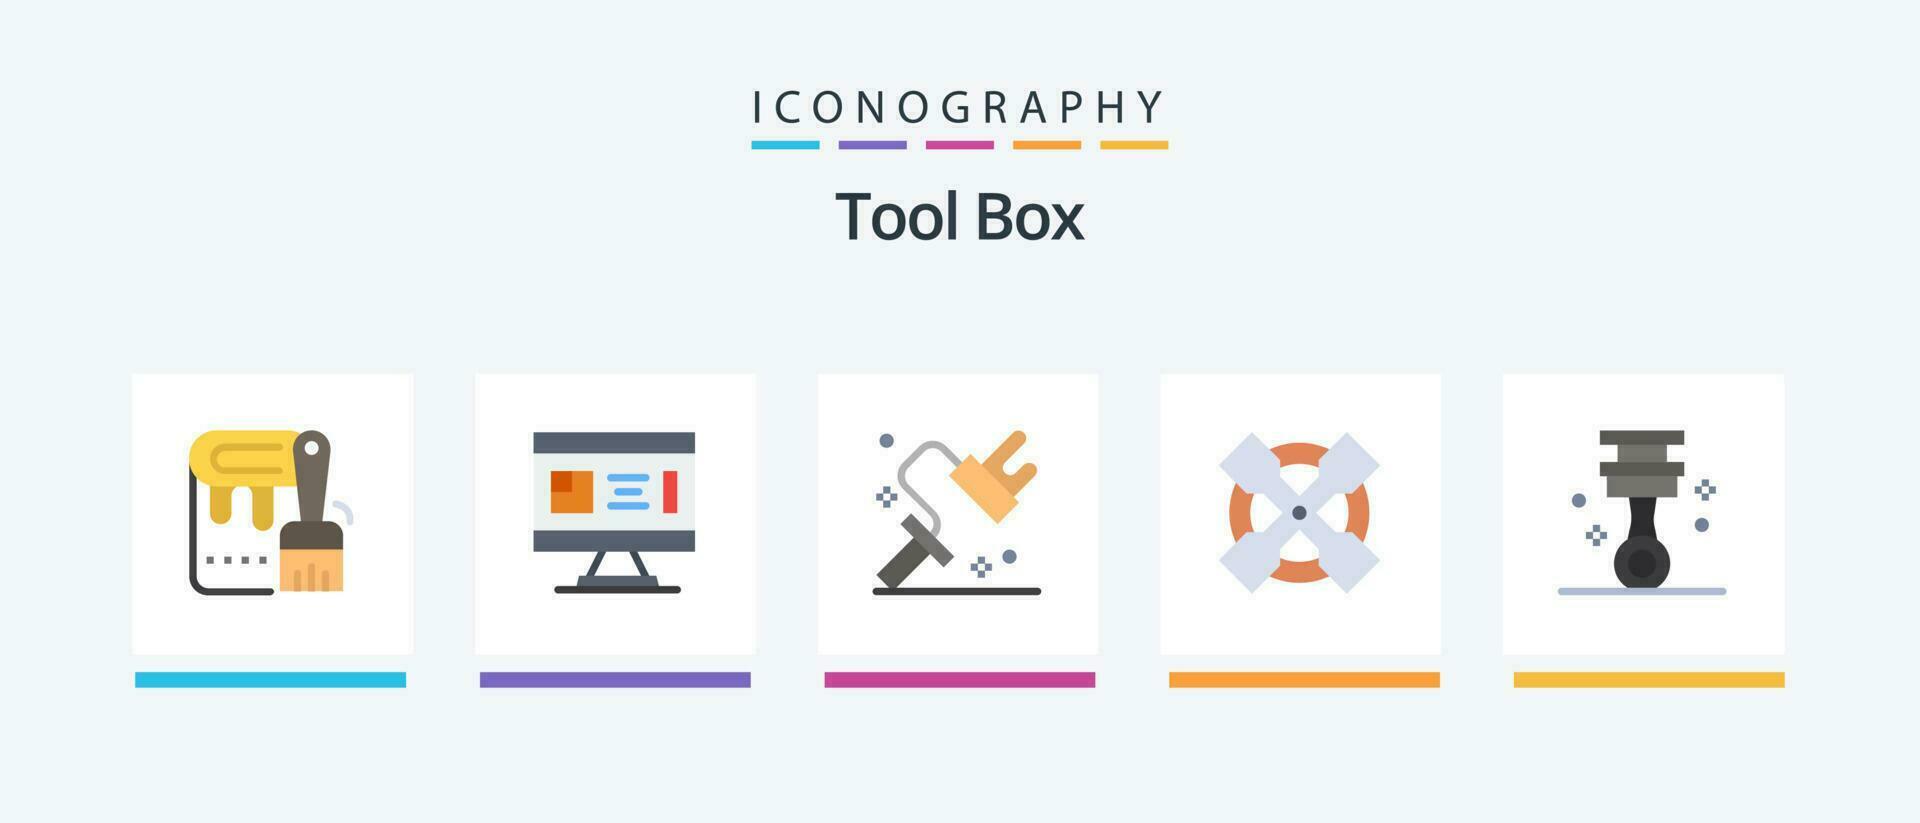 verktyg platt 5 ikon packa Inklusive garage. rycka. planera. verktyg. verktyg. kreativ ikoner design vektor